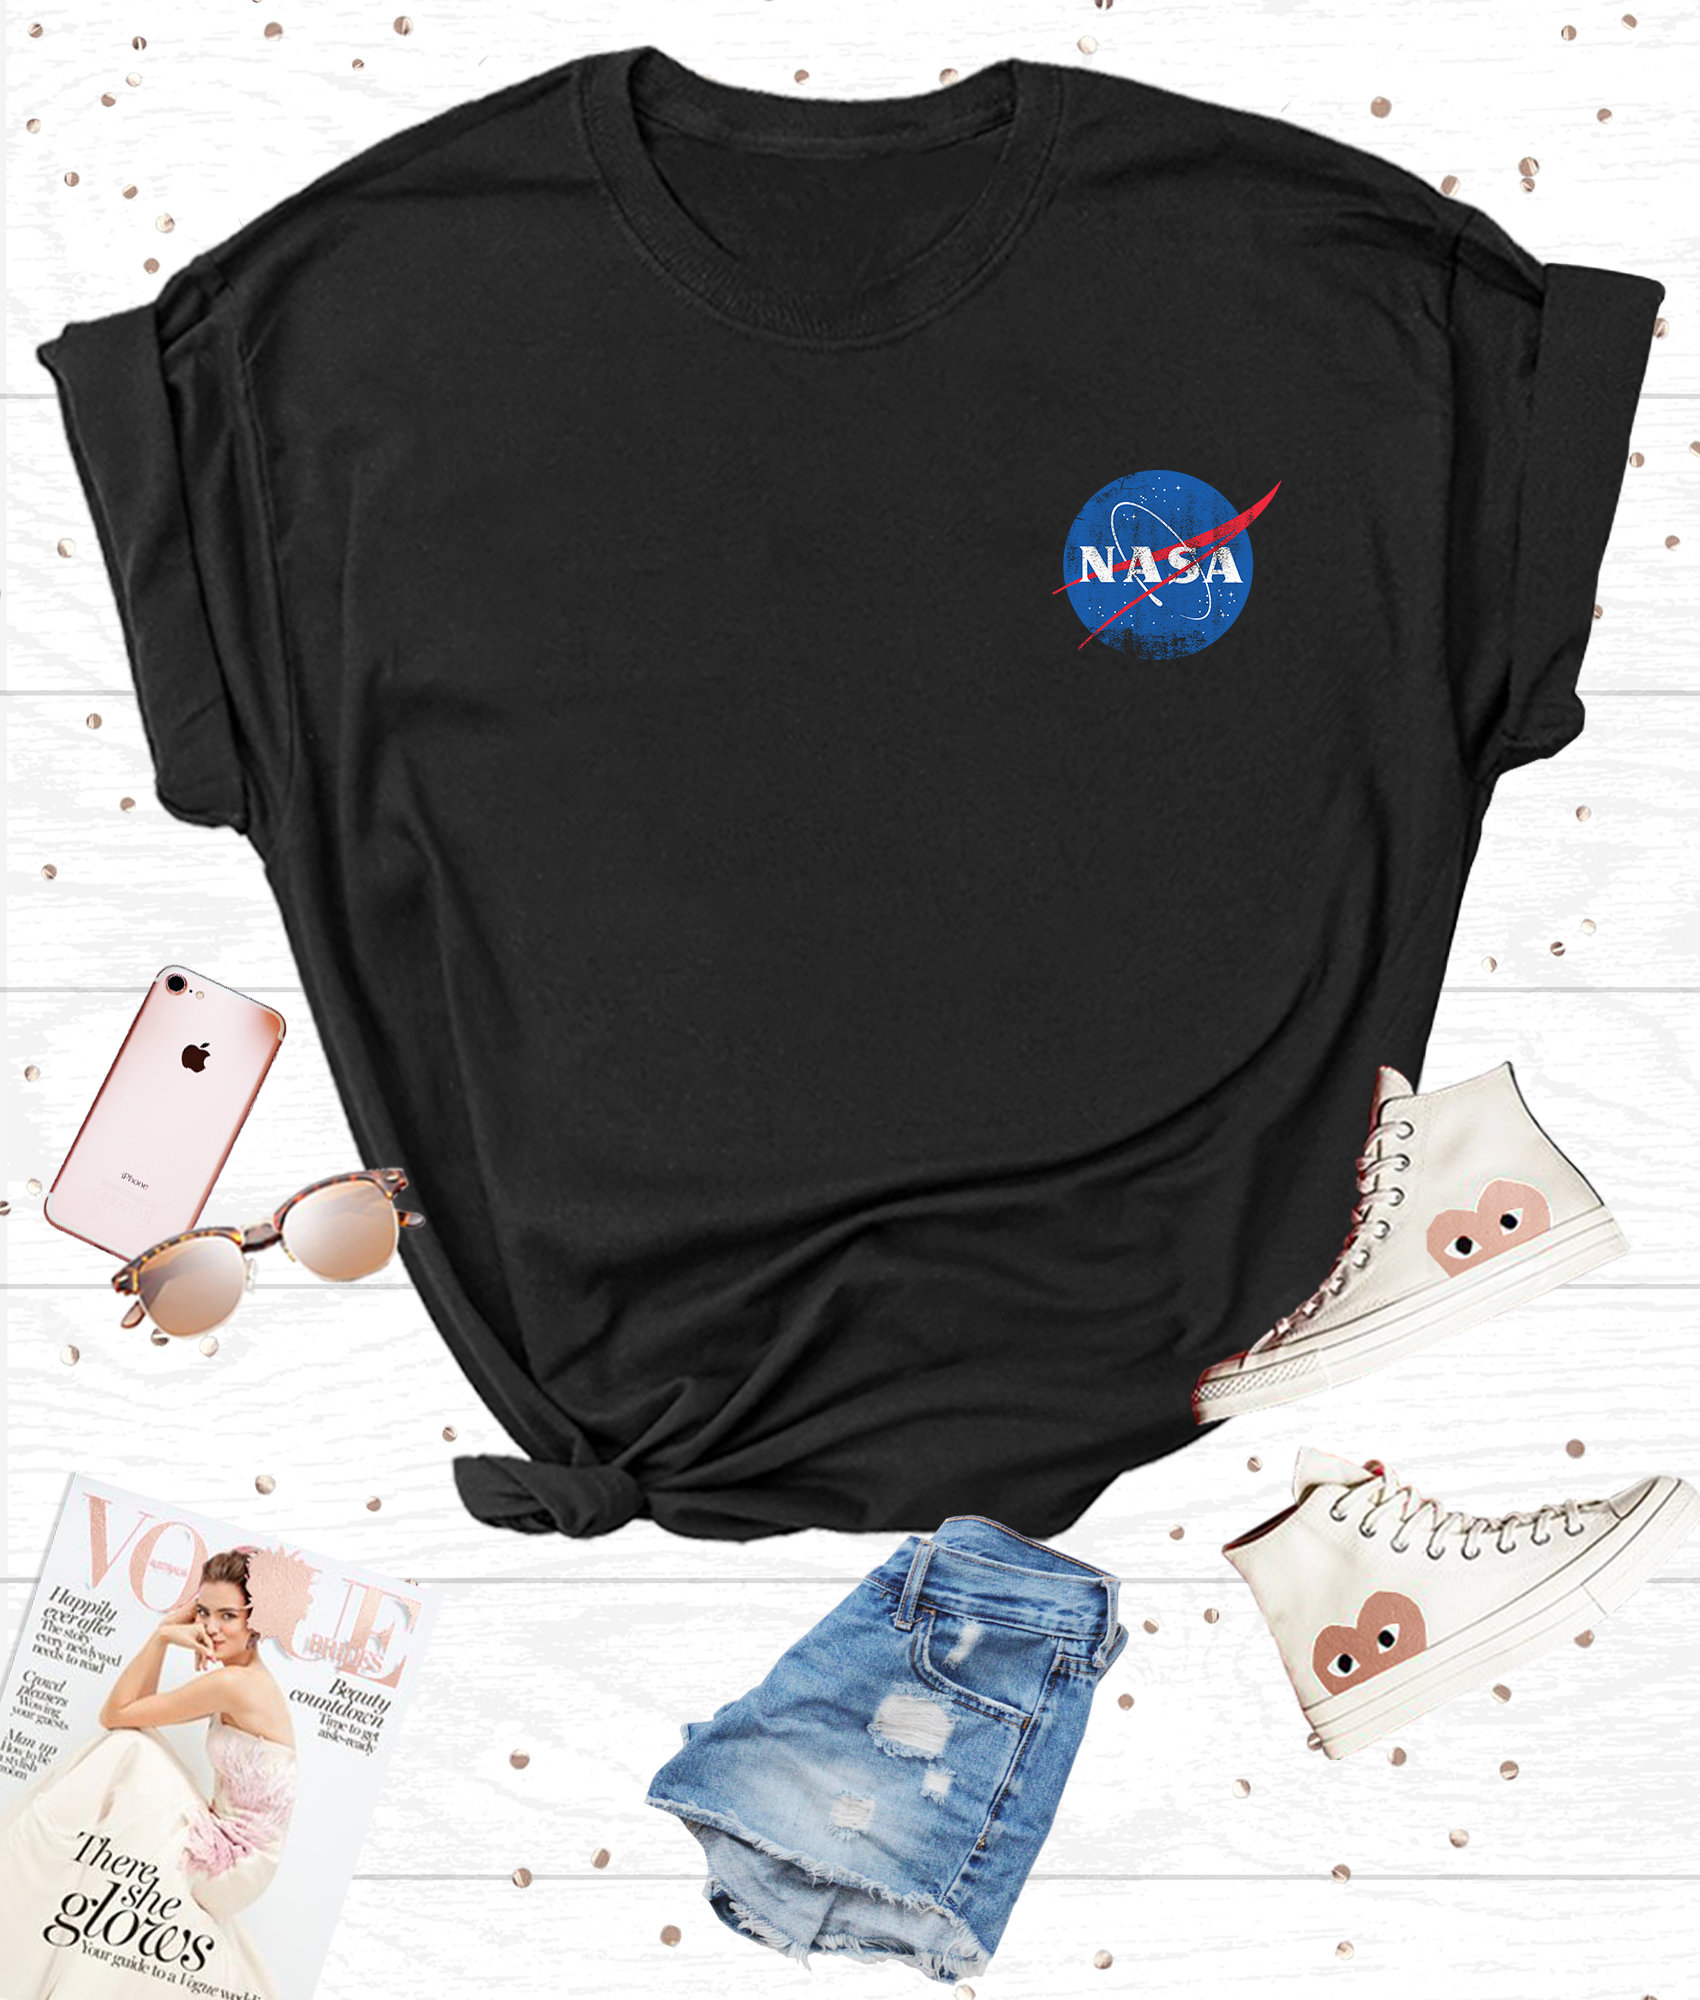 Womens Pocket NASA Logo T-shirt in Black for Women - Etsy